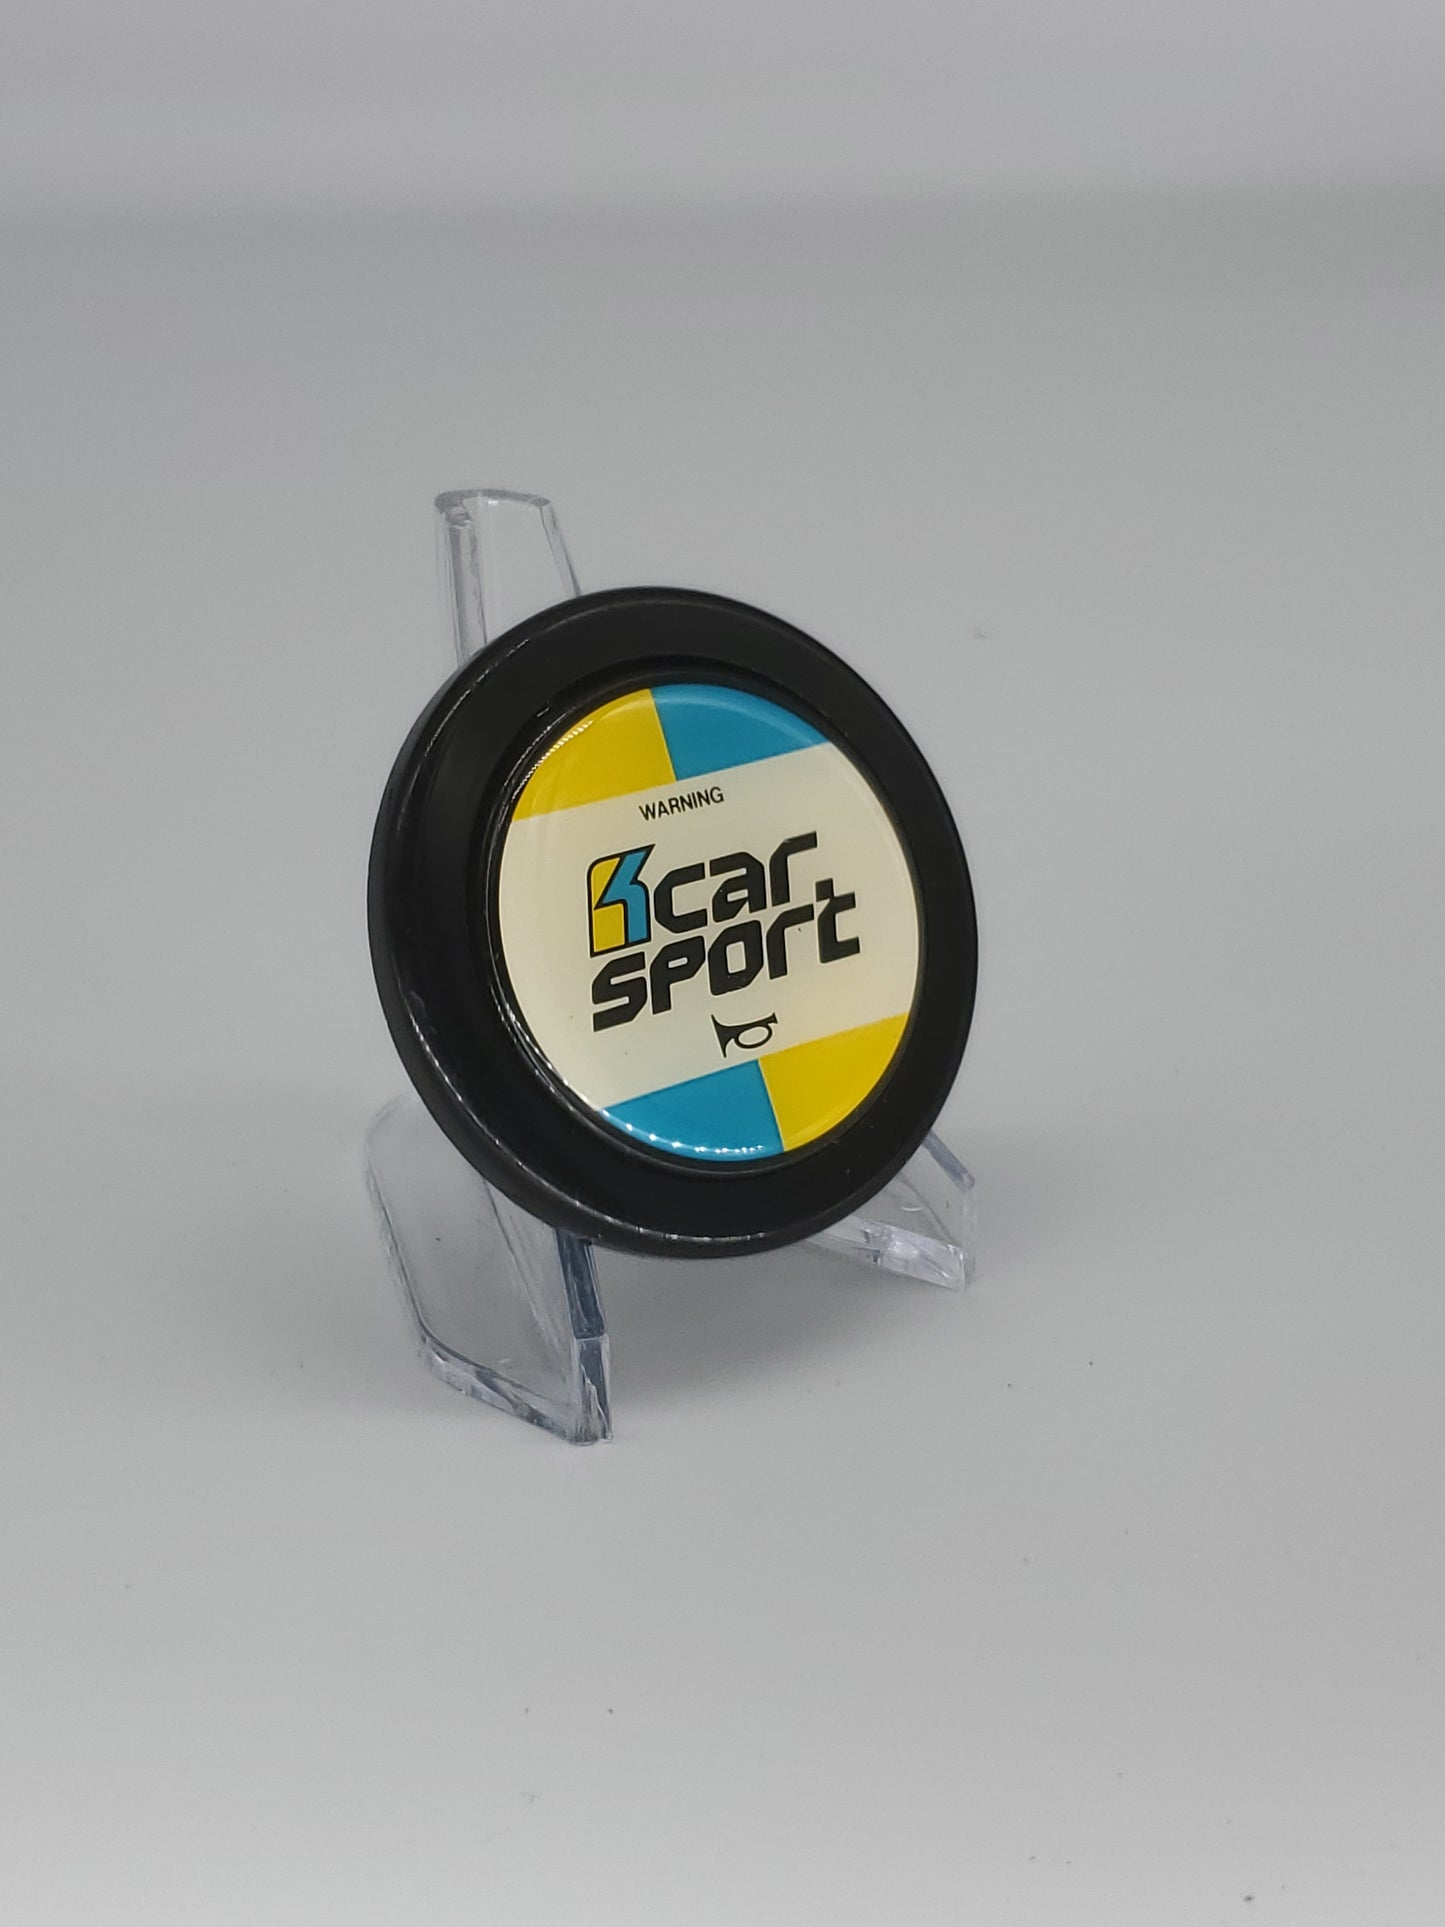 Kcar sport horn button